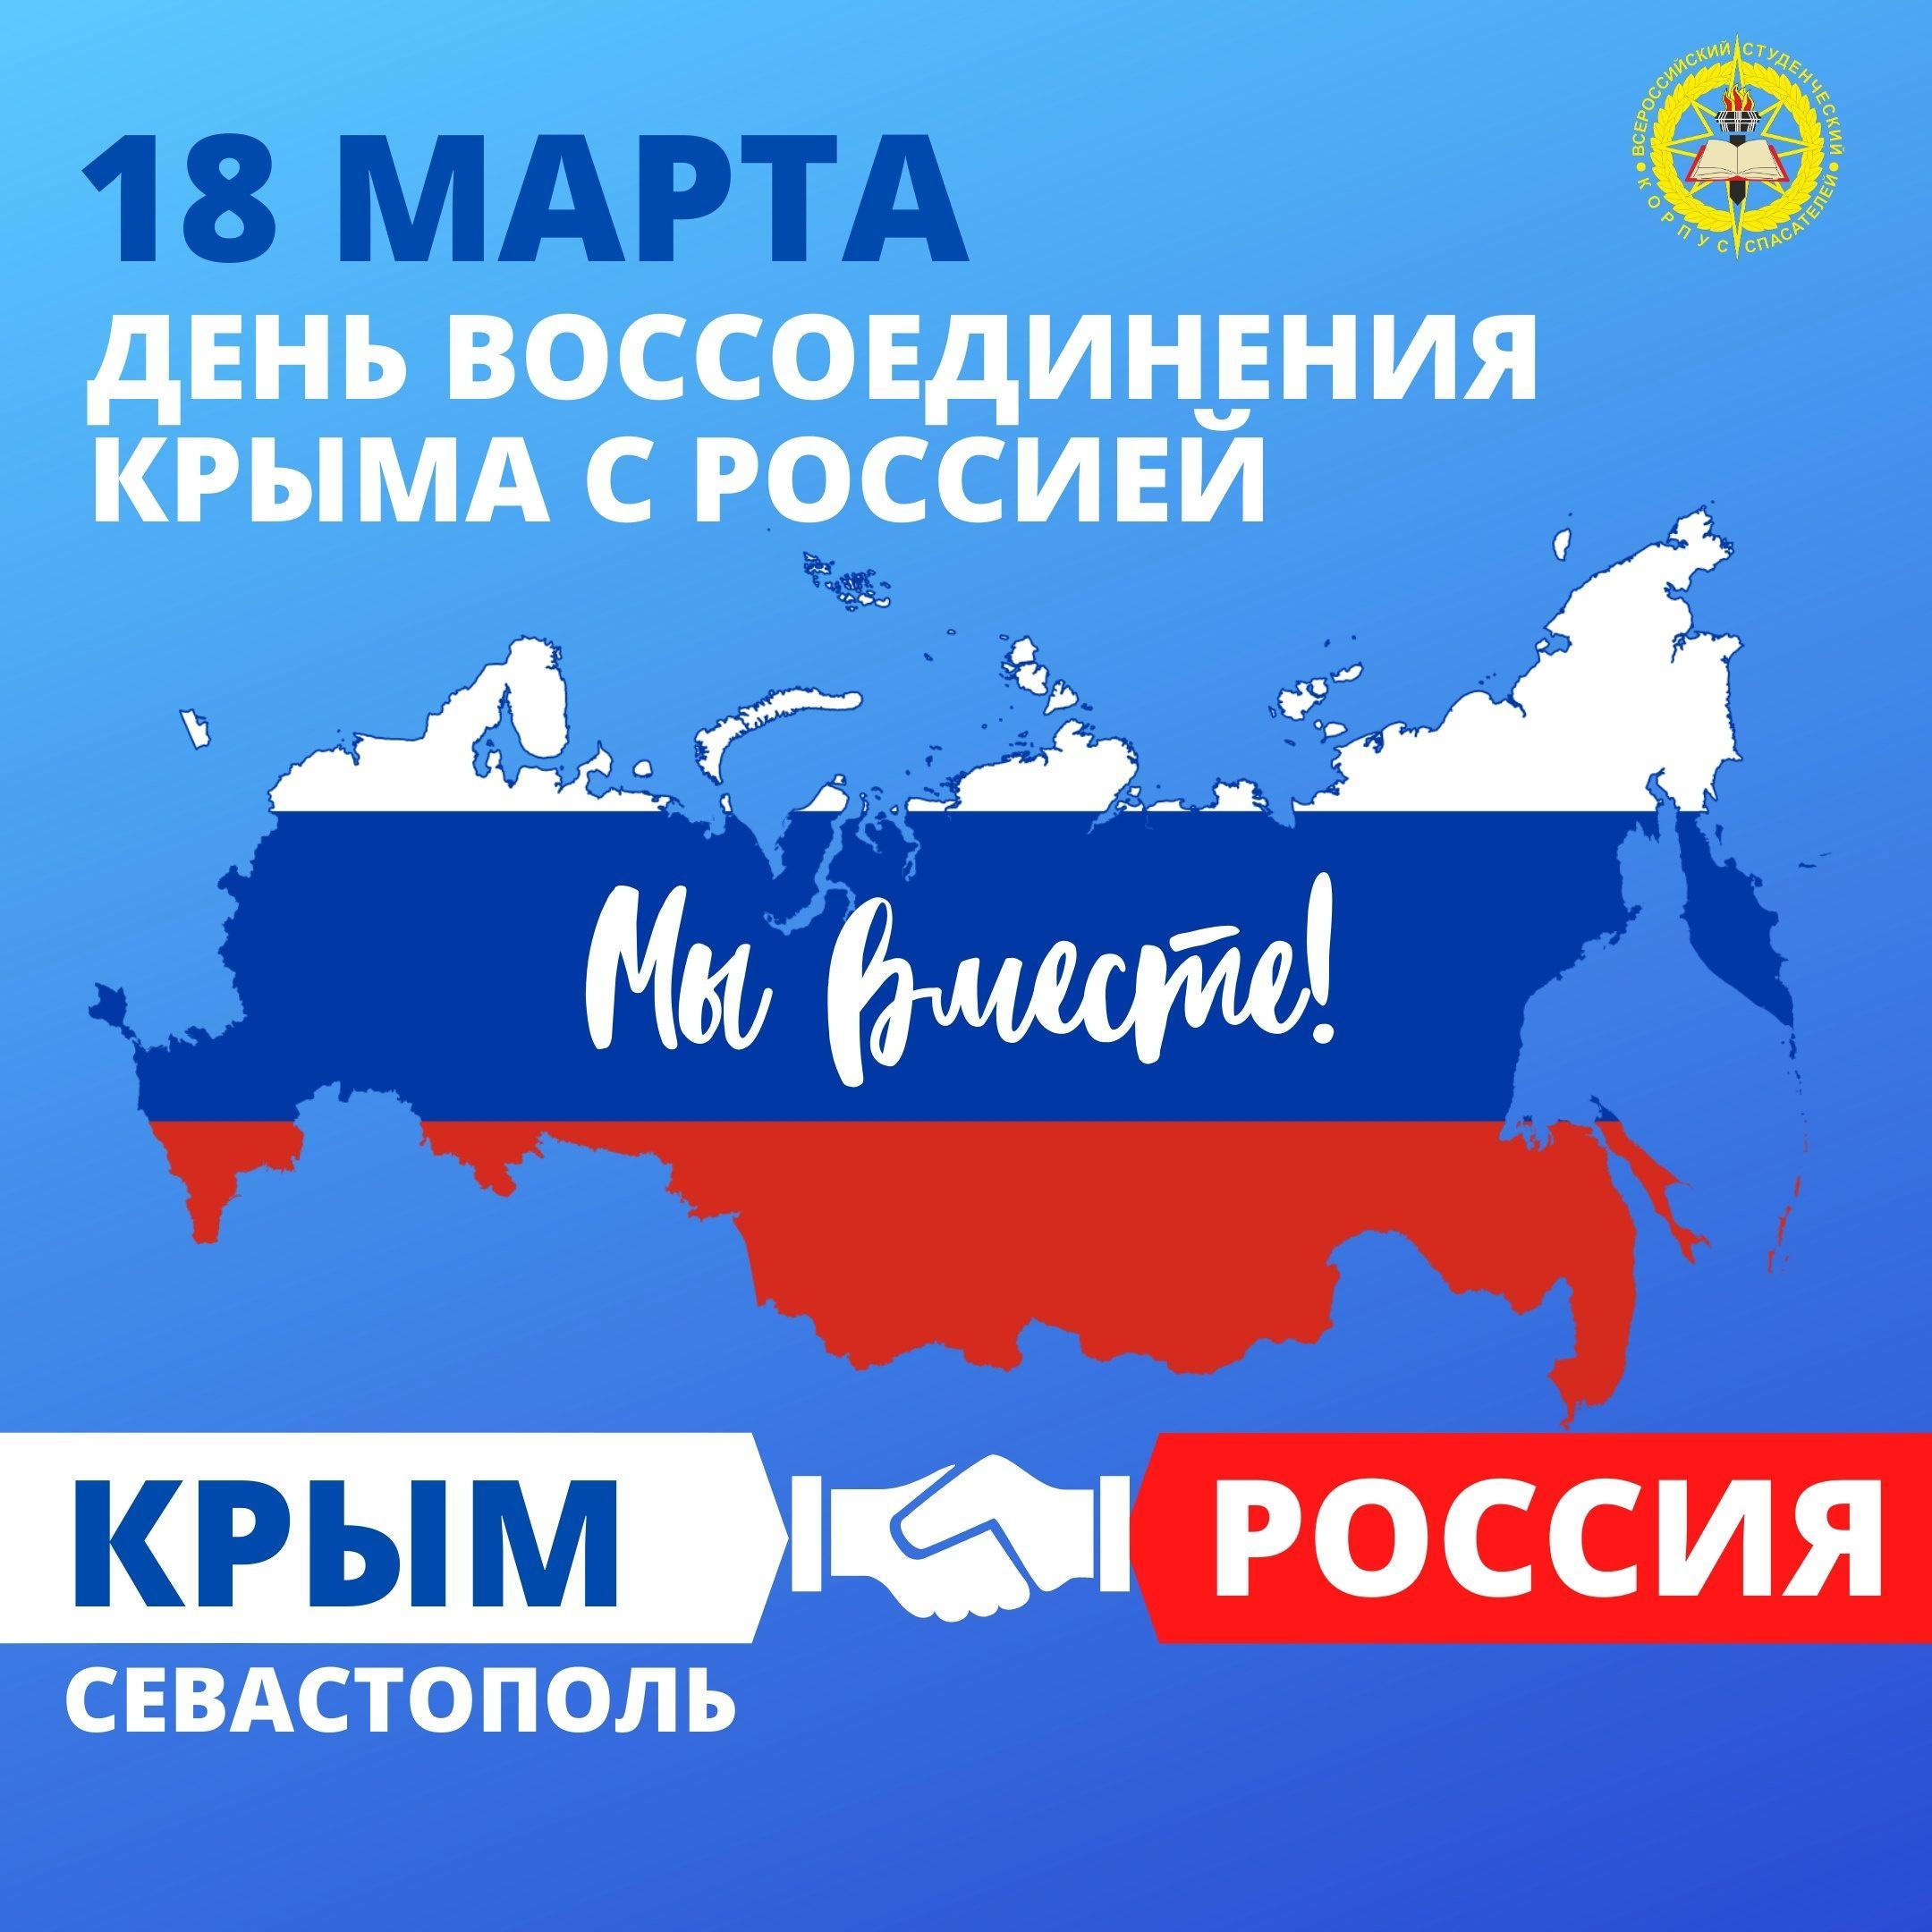 Воссоединение Крым-Россия